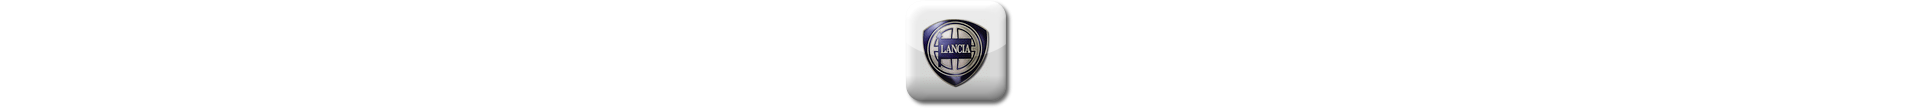 Boitier additionnel Lancia Diesel Evolussem